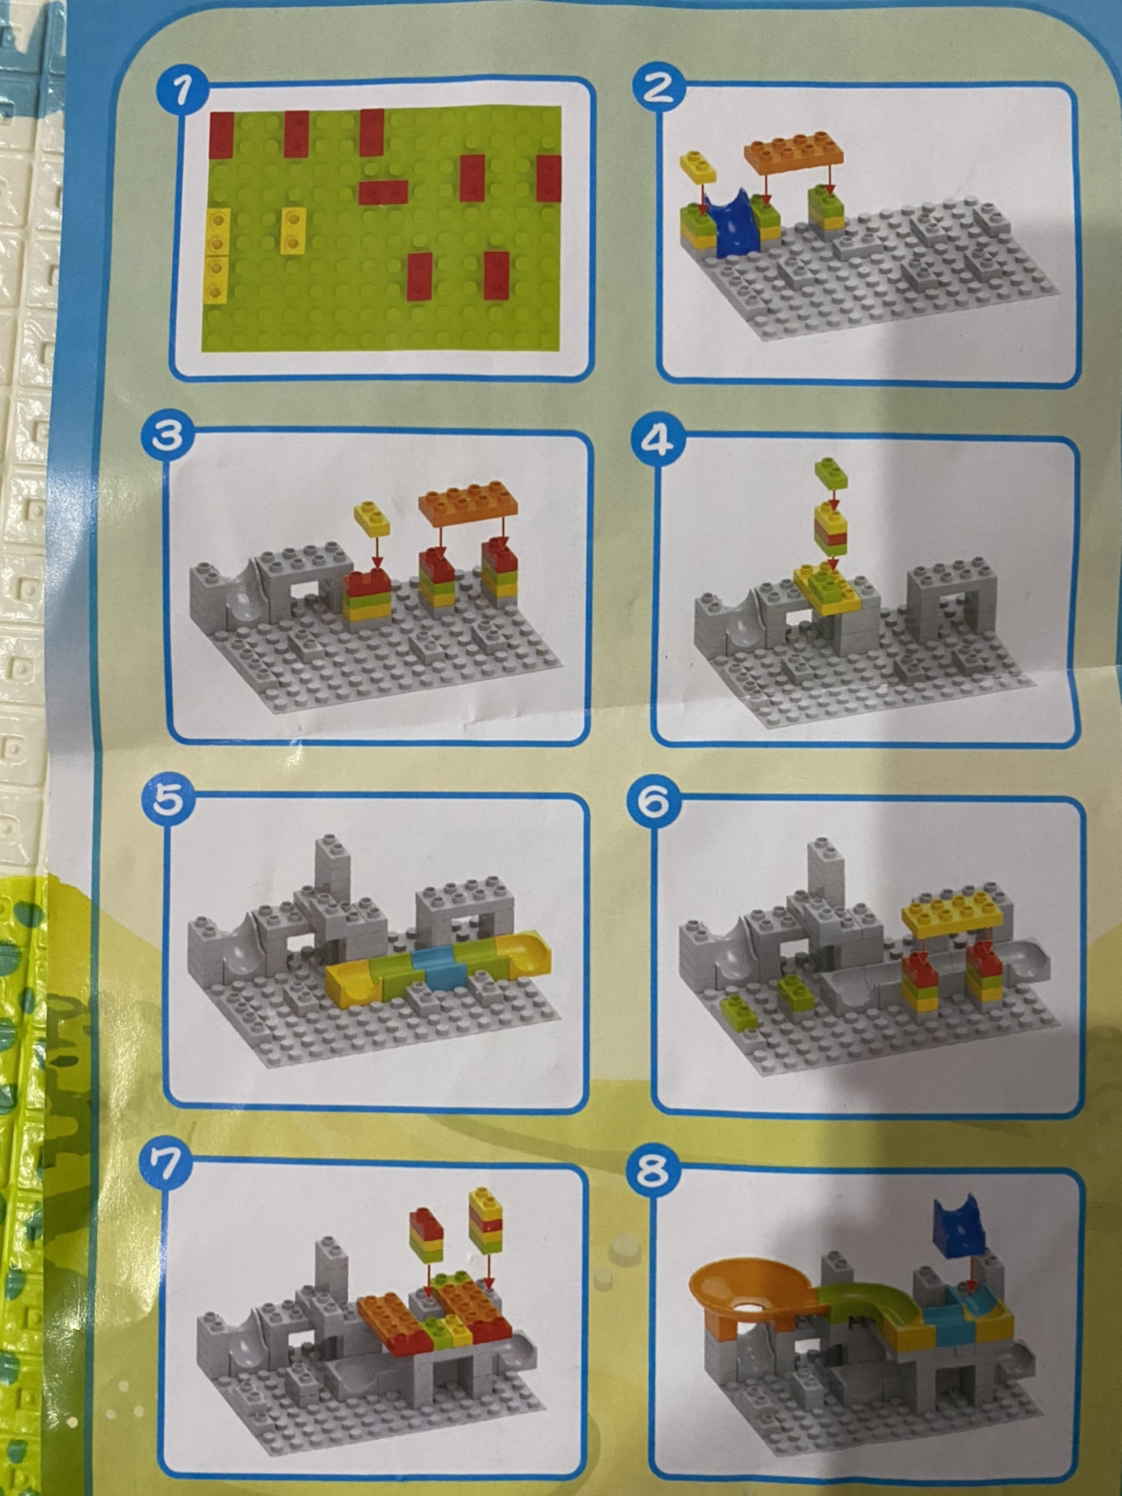 omkhe 1大颗粒积木拼装玩具男孩2-3-4-6岁兼容乐高积木101颗滑道儿童